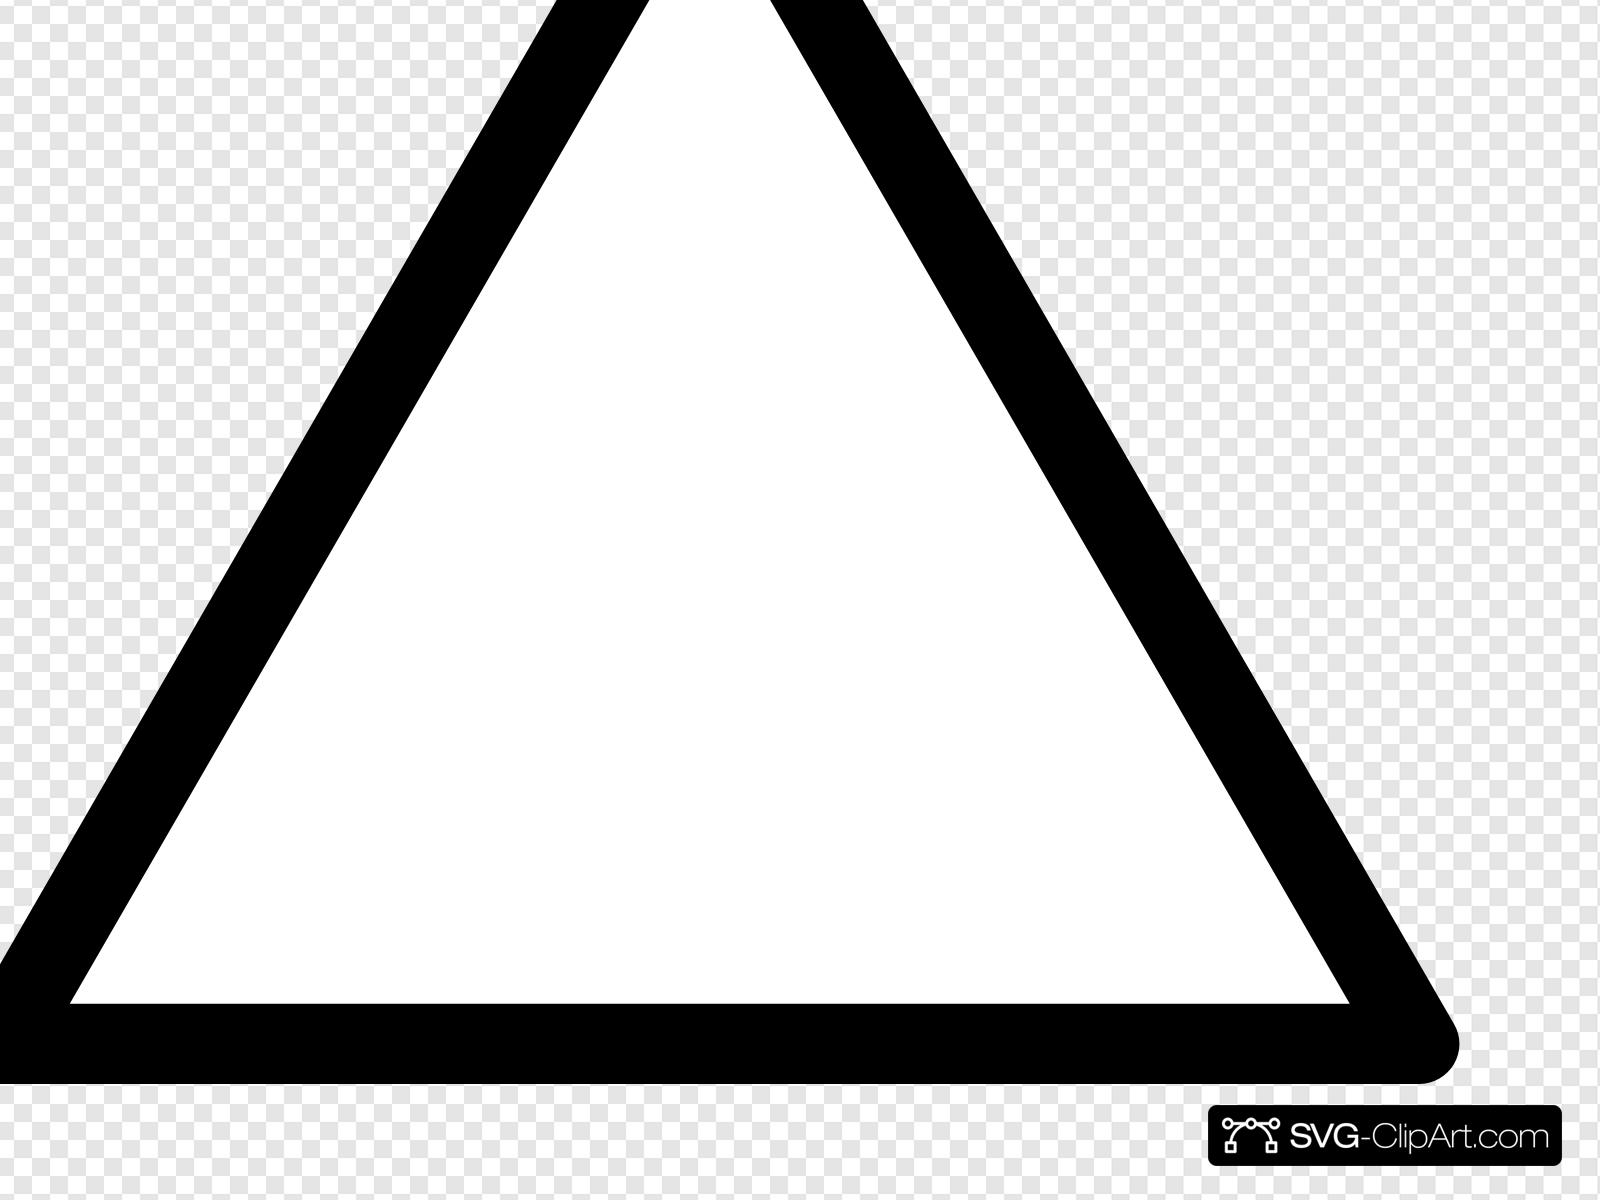 Black Triangle Clip art, Icon and SVG